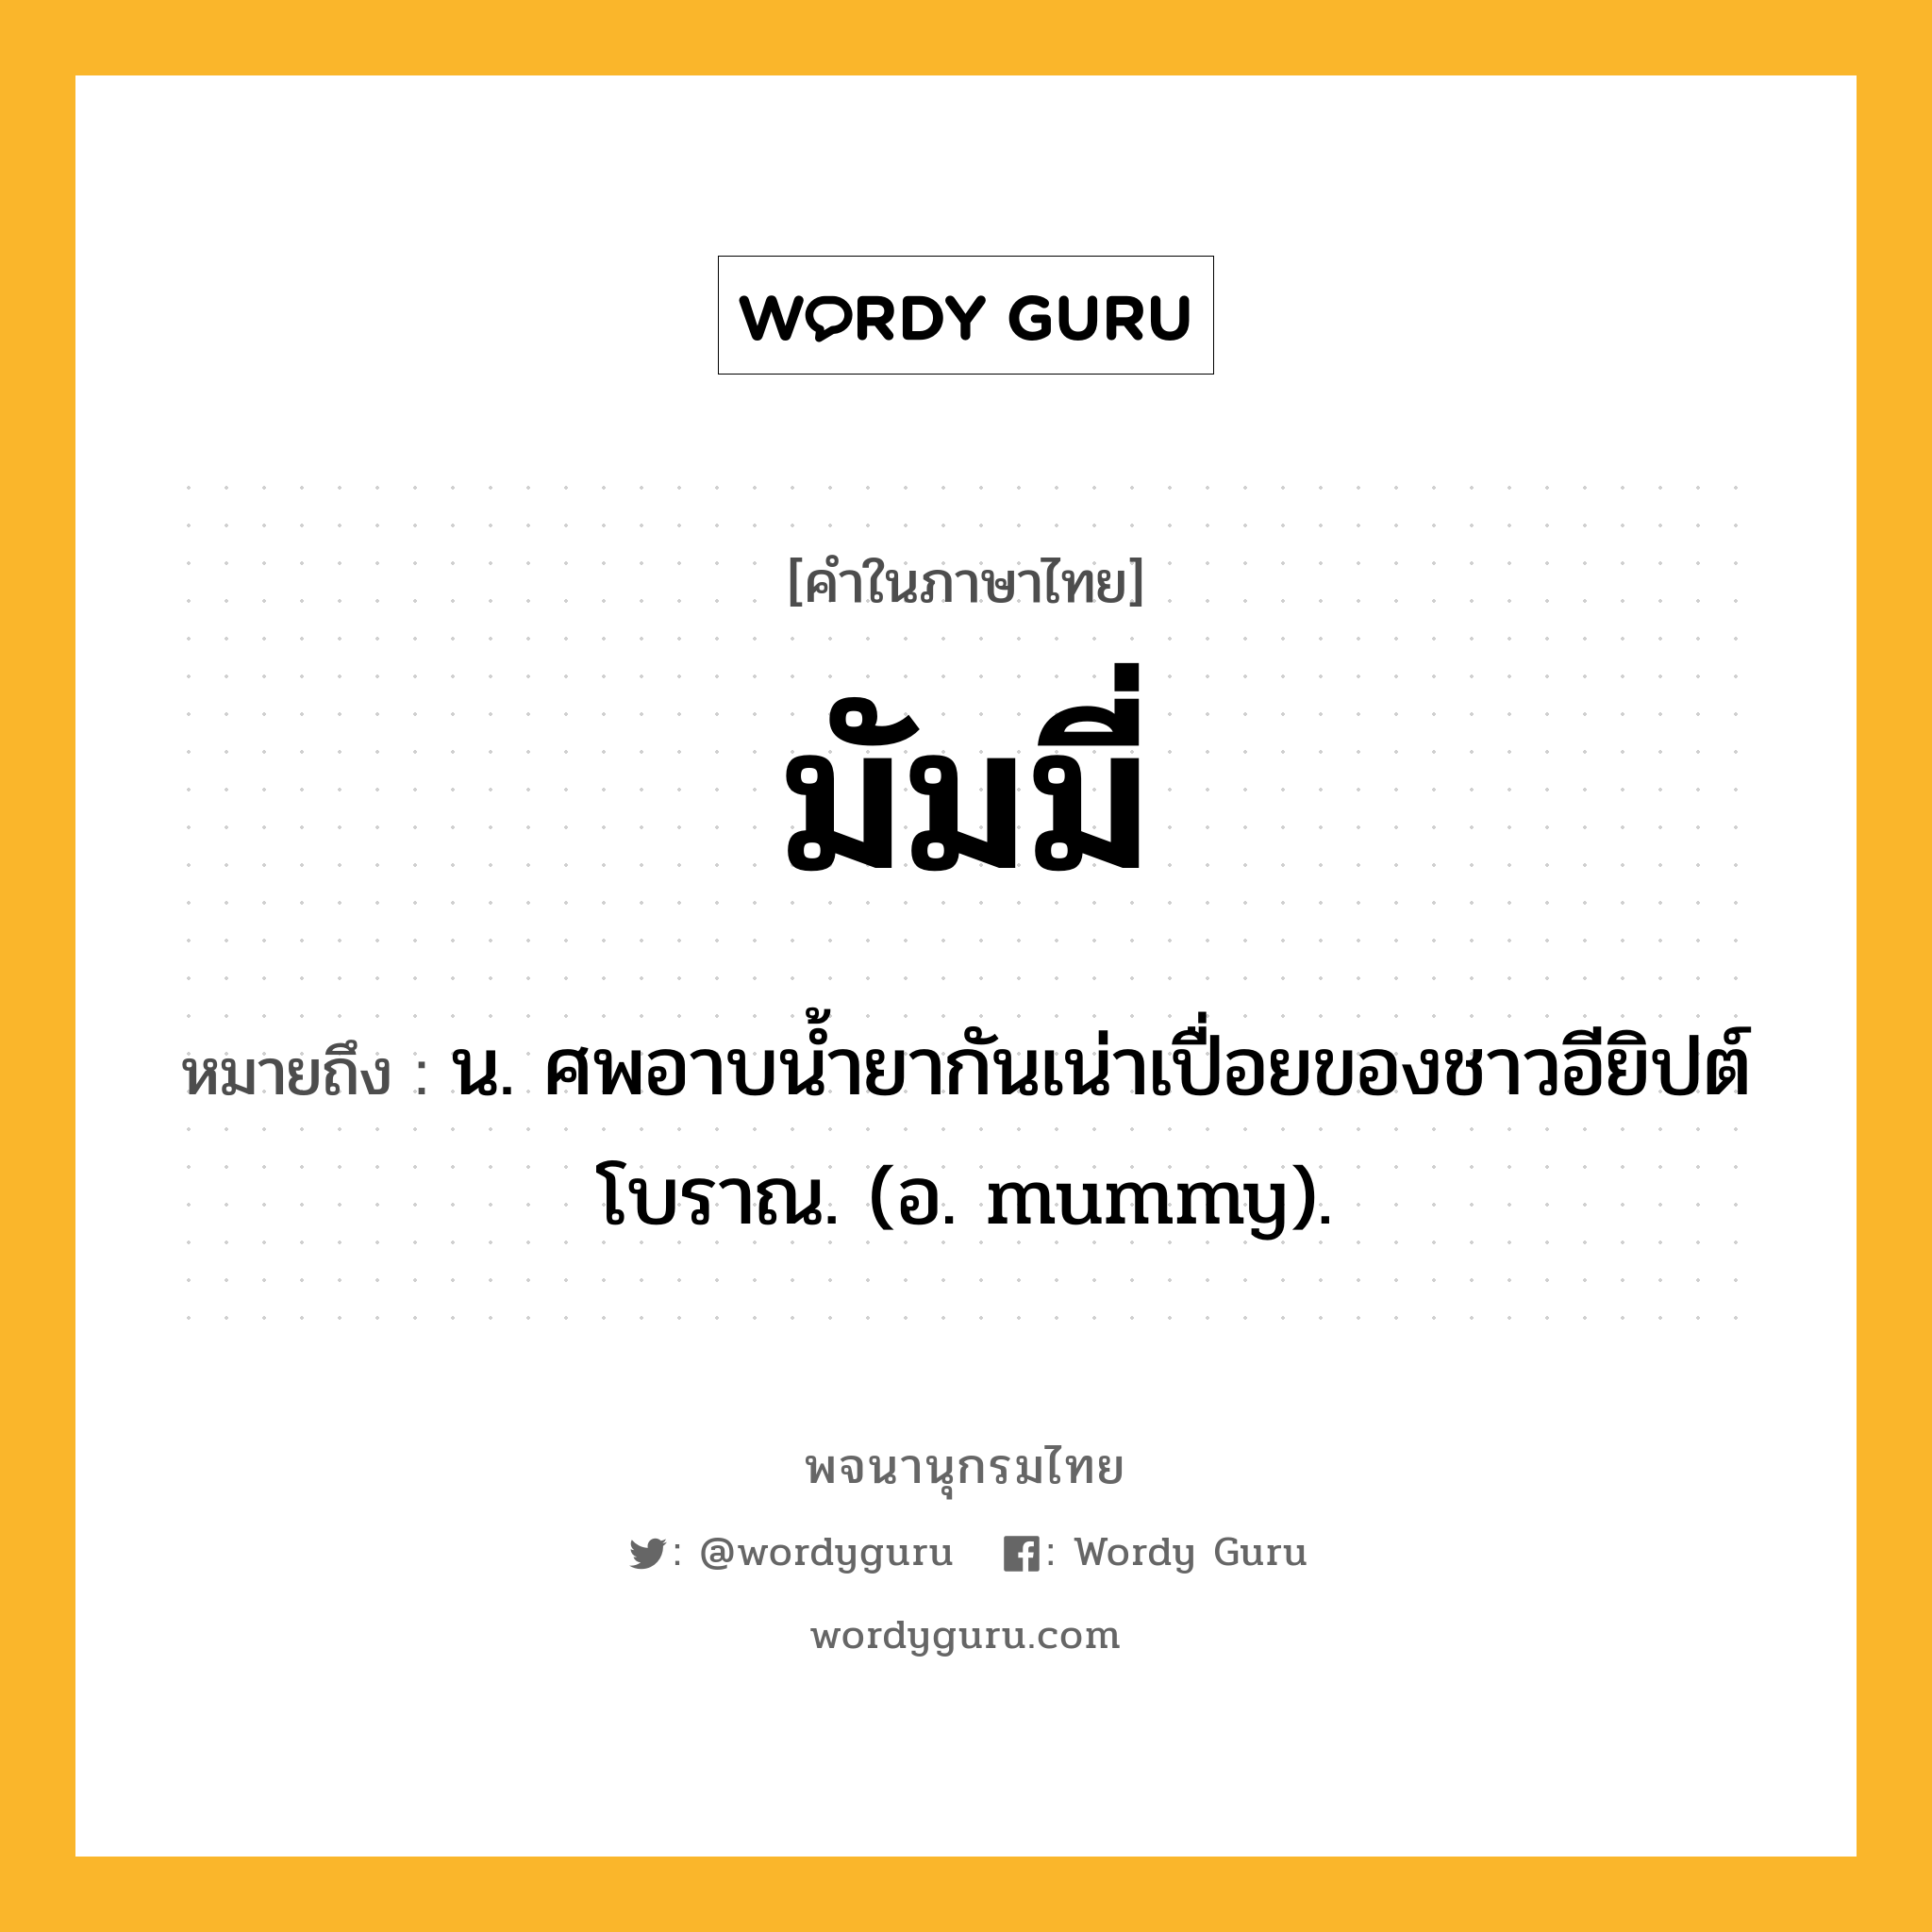 มัมมี่ ความหมาย หมายถึงอะไร?, คำในภาษาไทย มัมมี่ หมายถึง น. ศพอาบนํ้ายากันเน่าเปื่อยของชาวอียิปต์โบราณ. (อ. mummy).